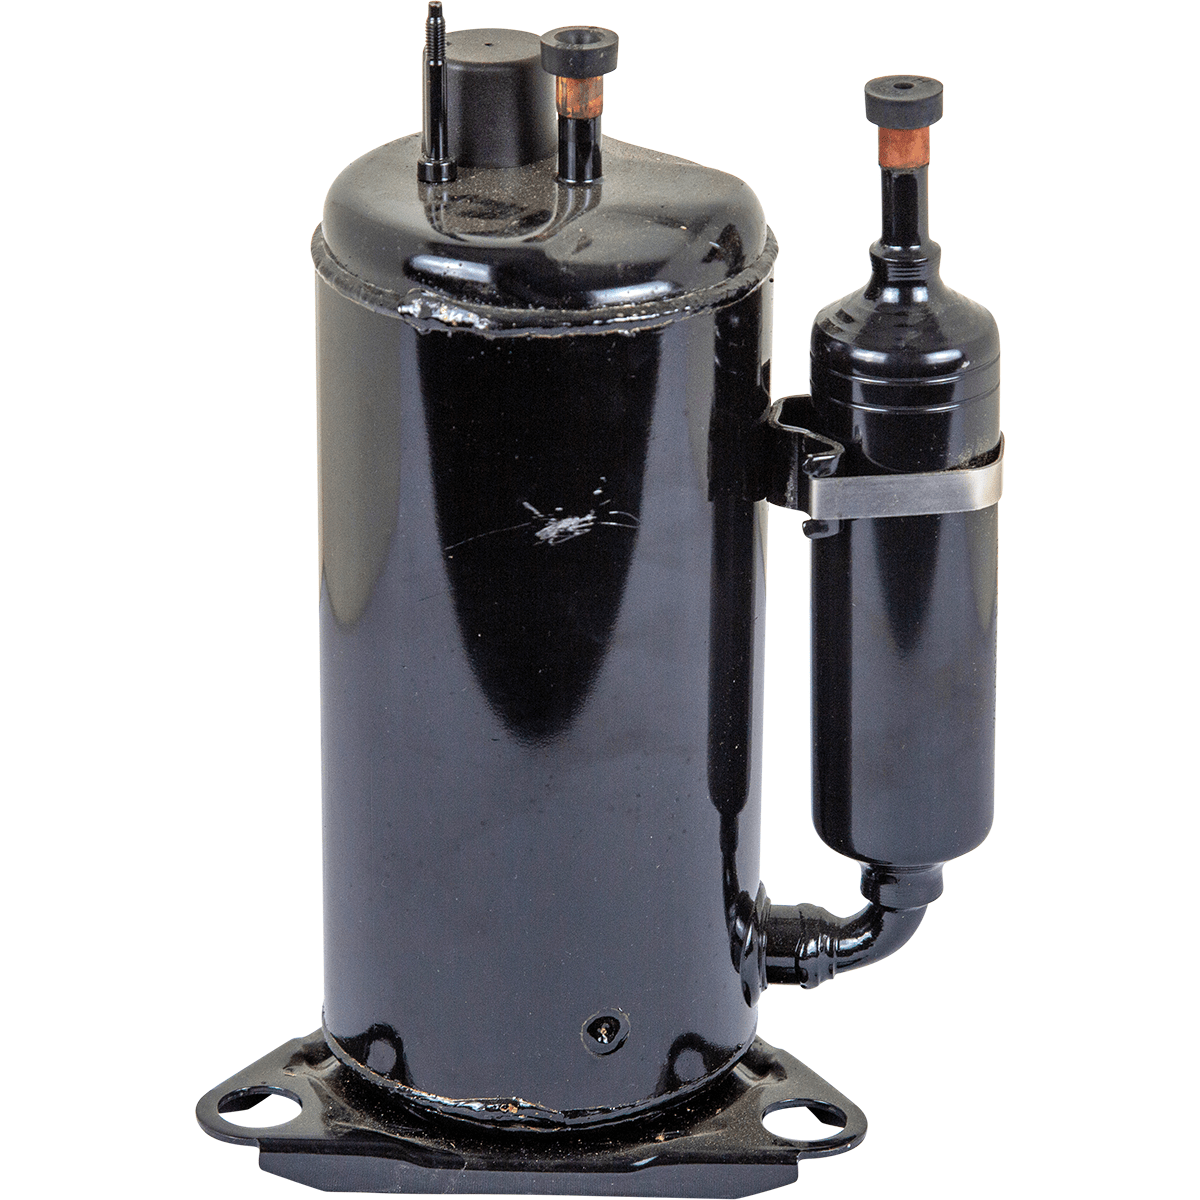 Santa Fe Replacement Compressor For Advance90 Dehumidifier (4029182)